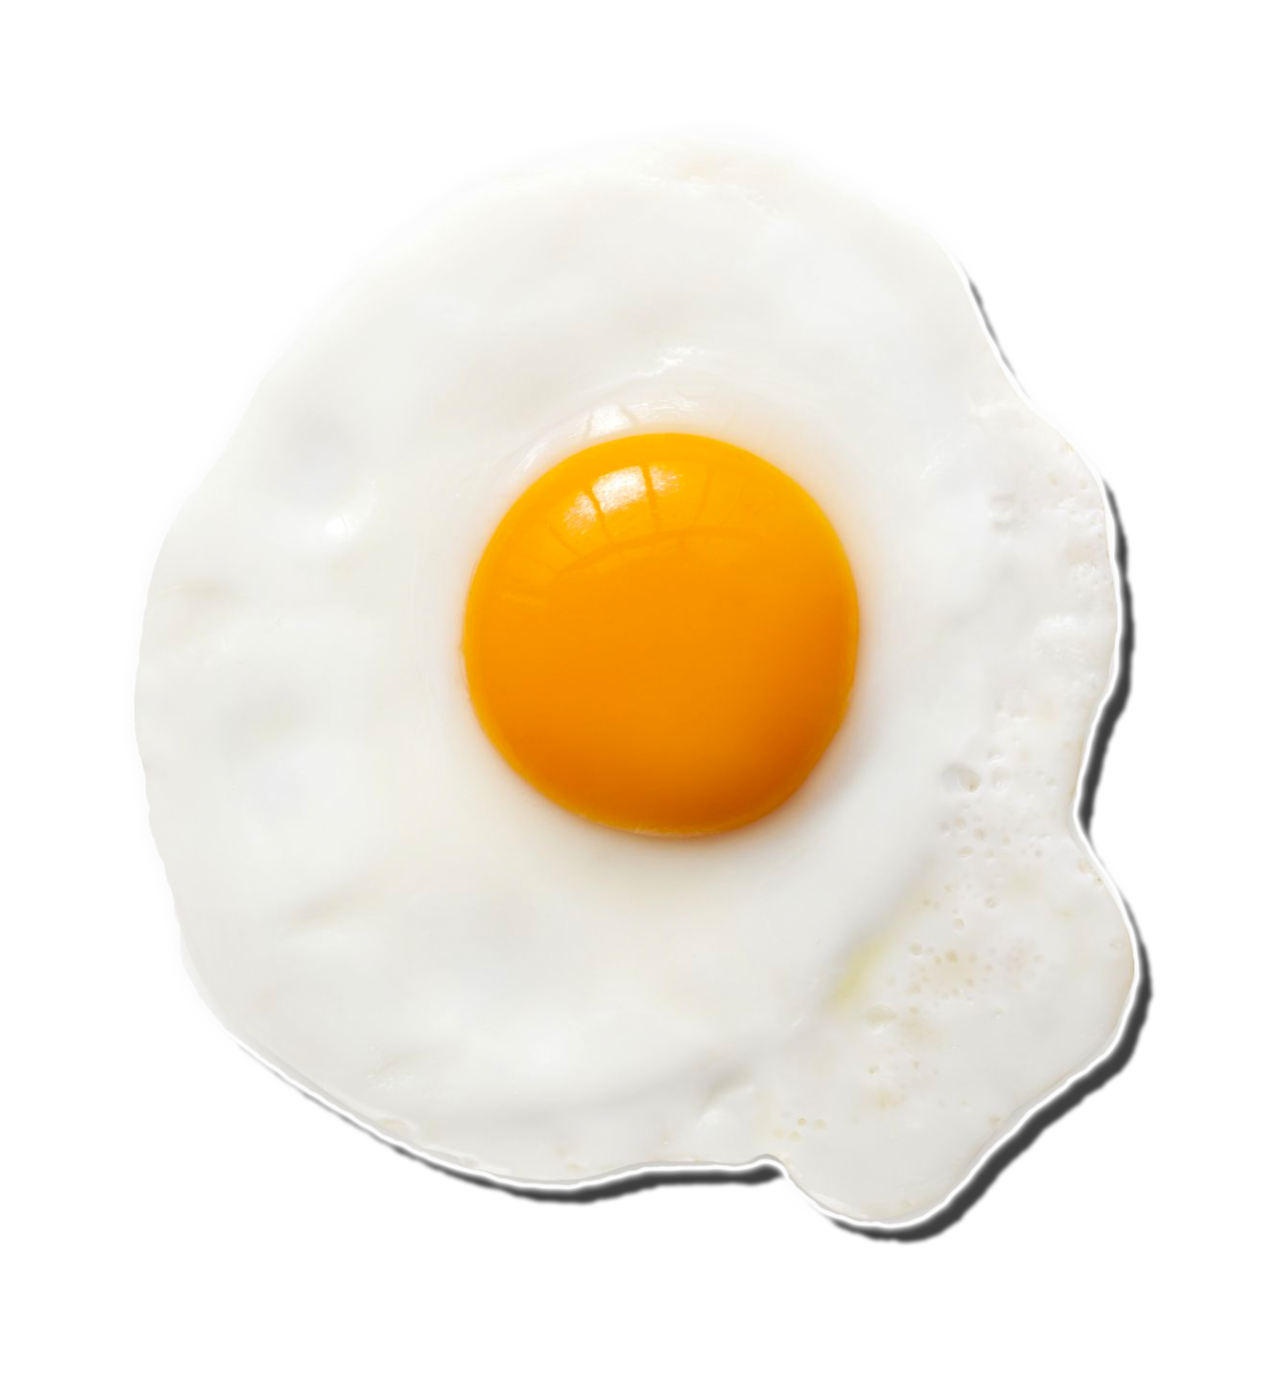 Setengah telur goreng Gambar berkualitas tinggi